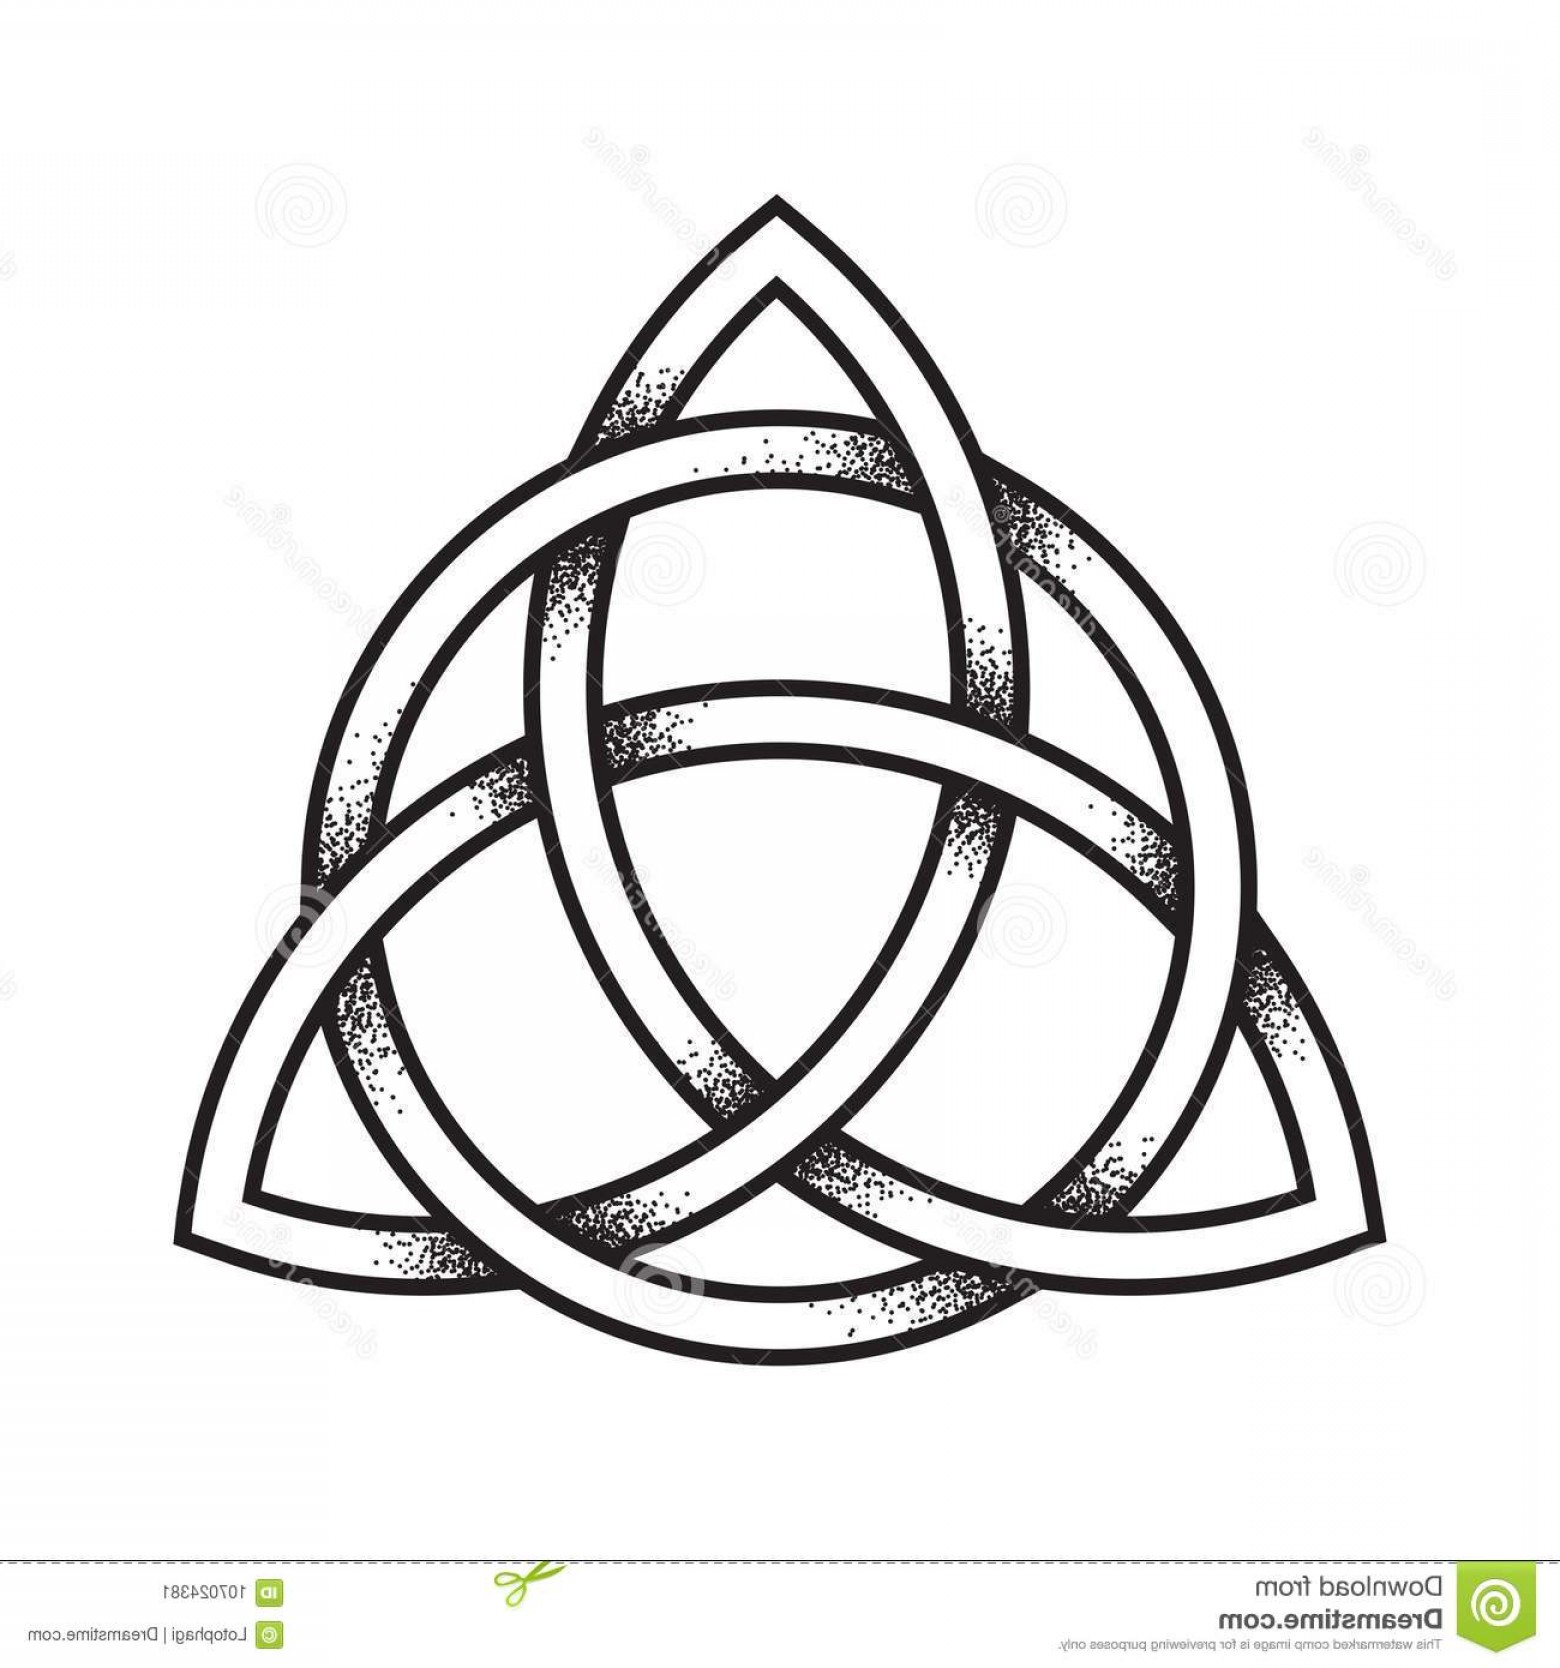 Кельтский символ Троицы(Triquetra)